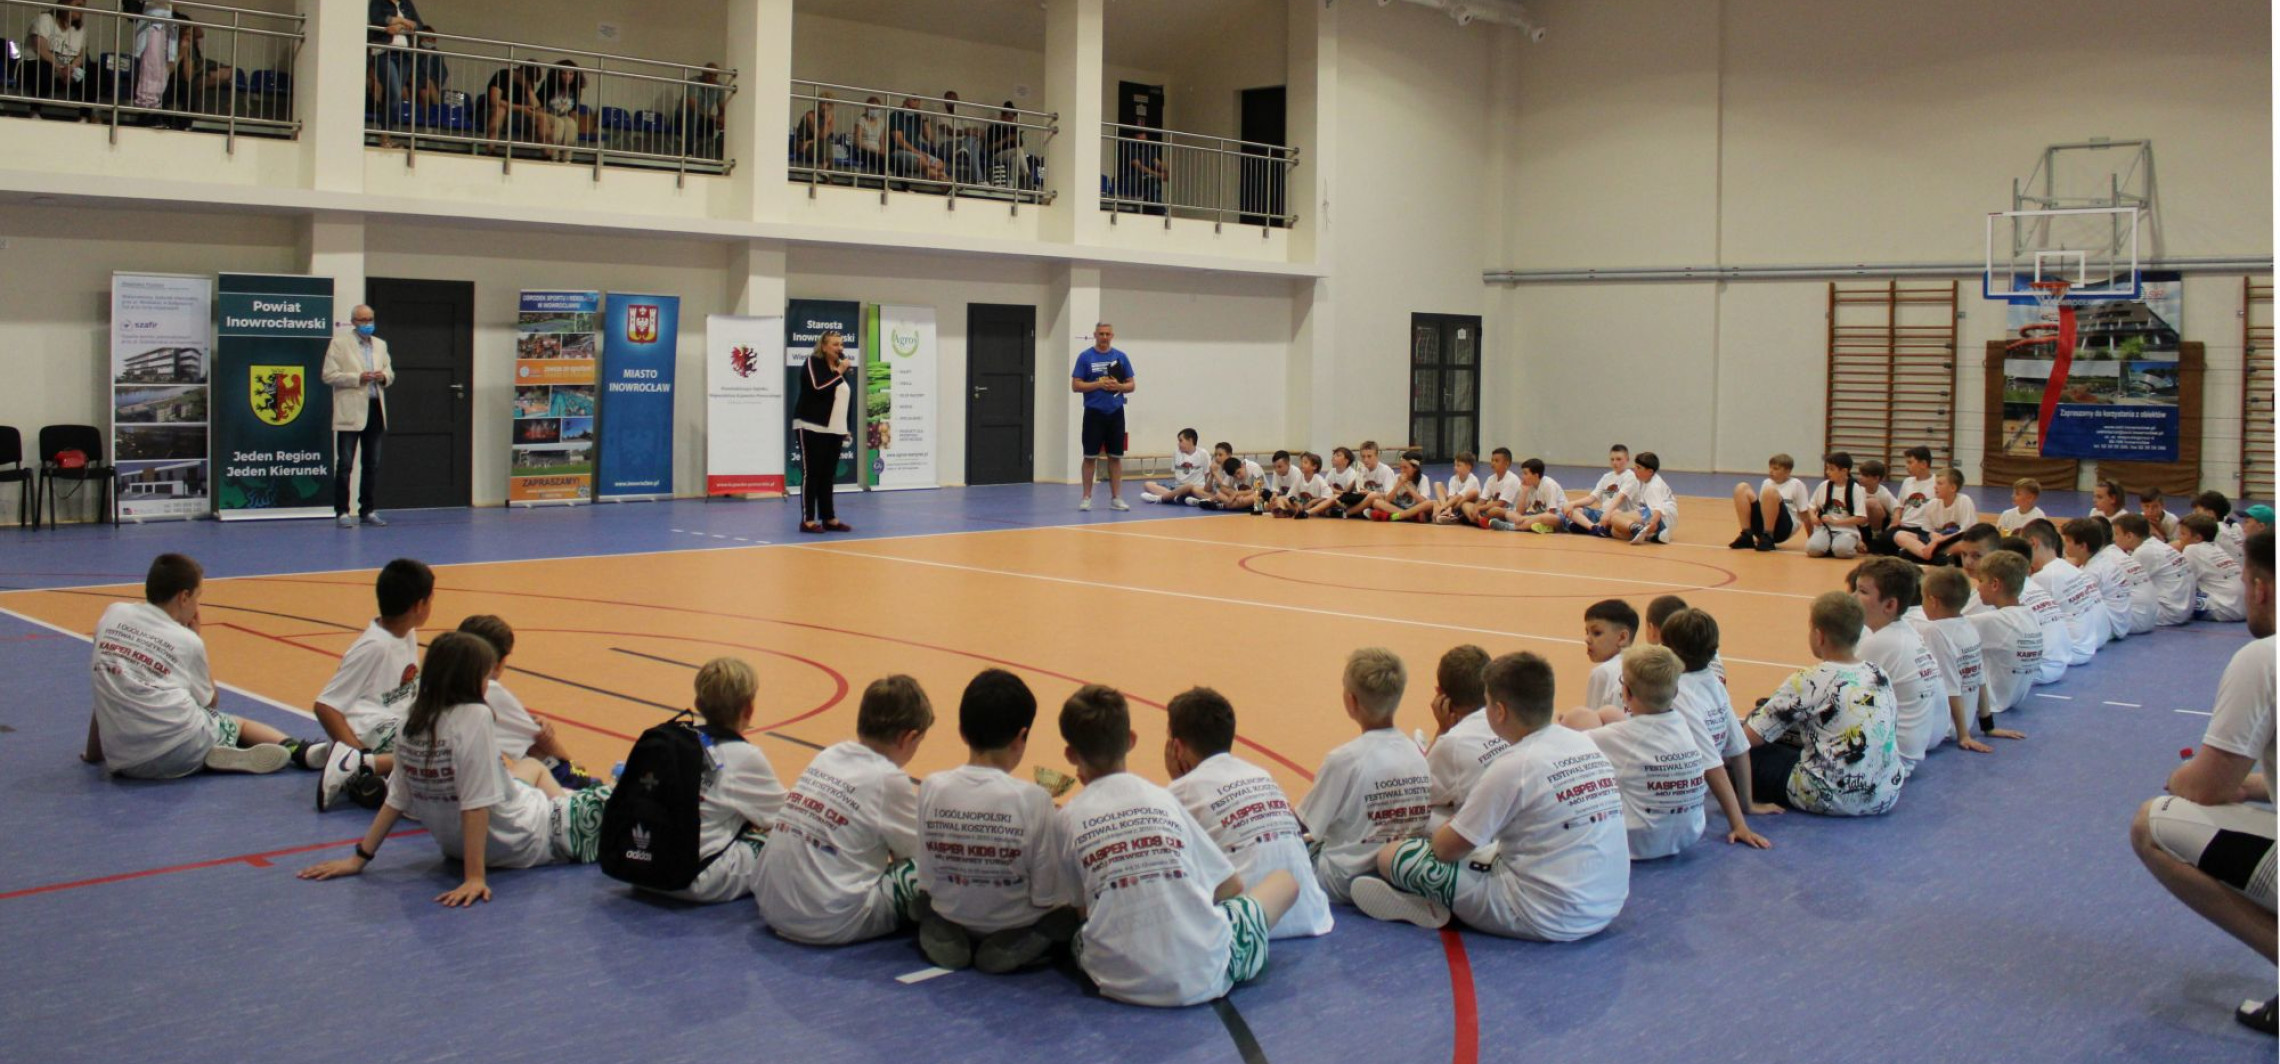 Inowrocław - Puchar Kasper Kids Cup jedzie do stolicy